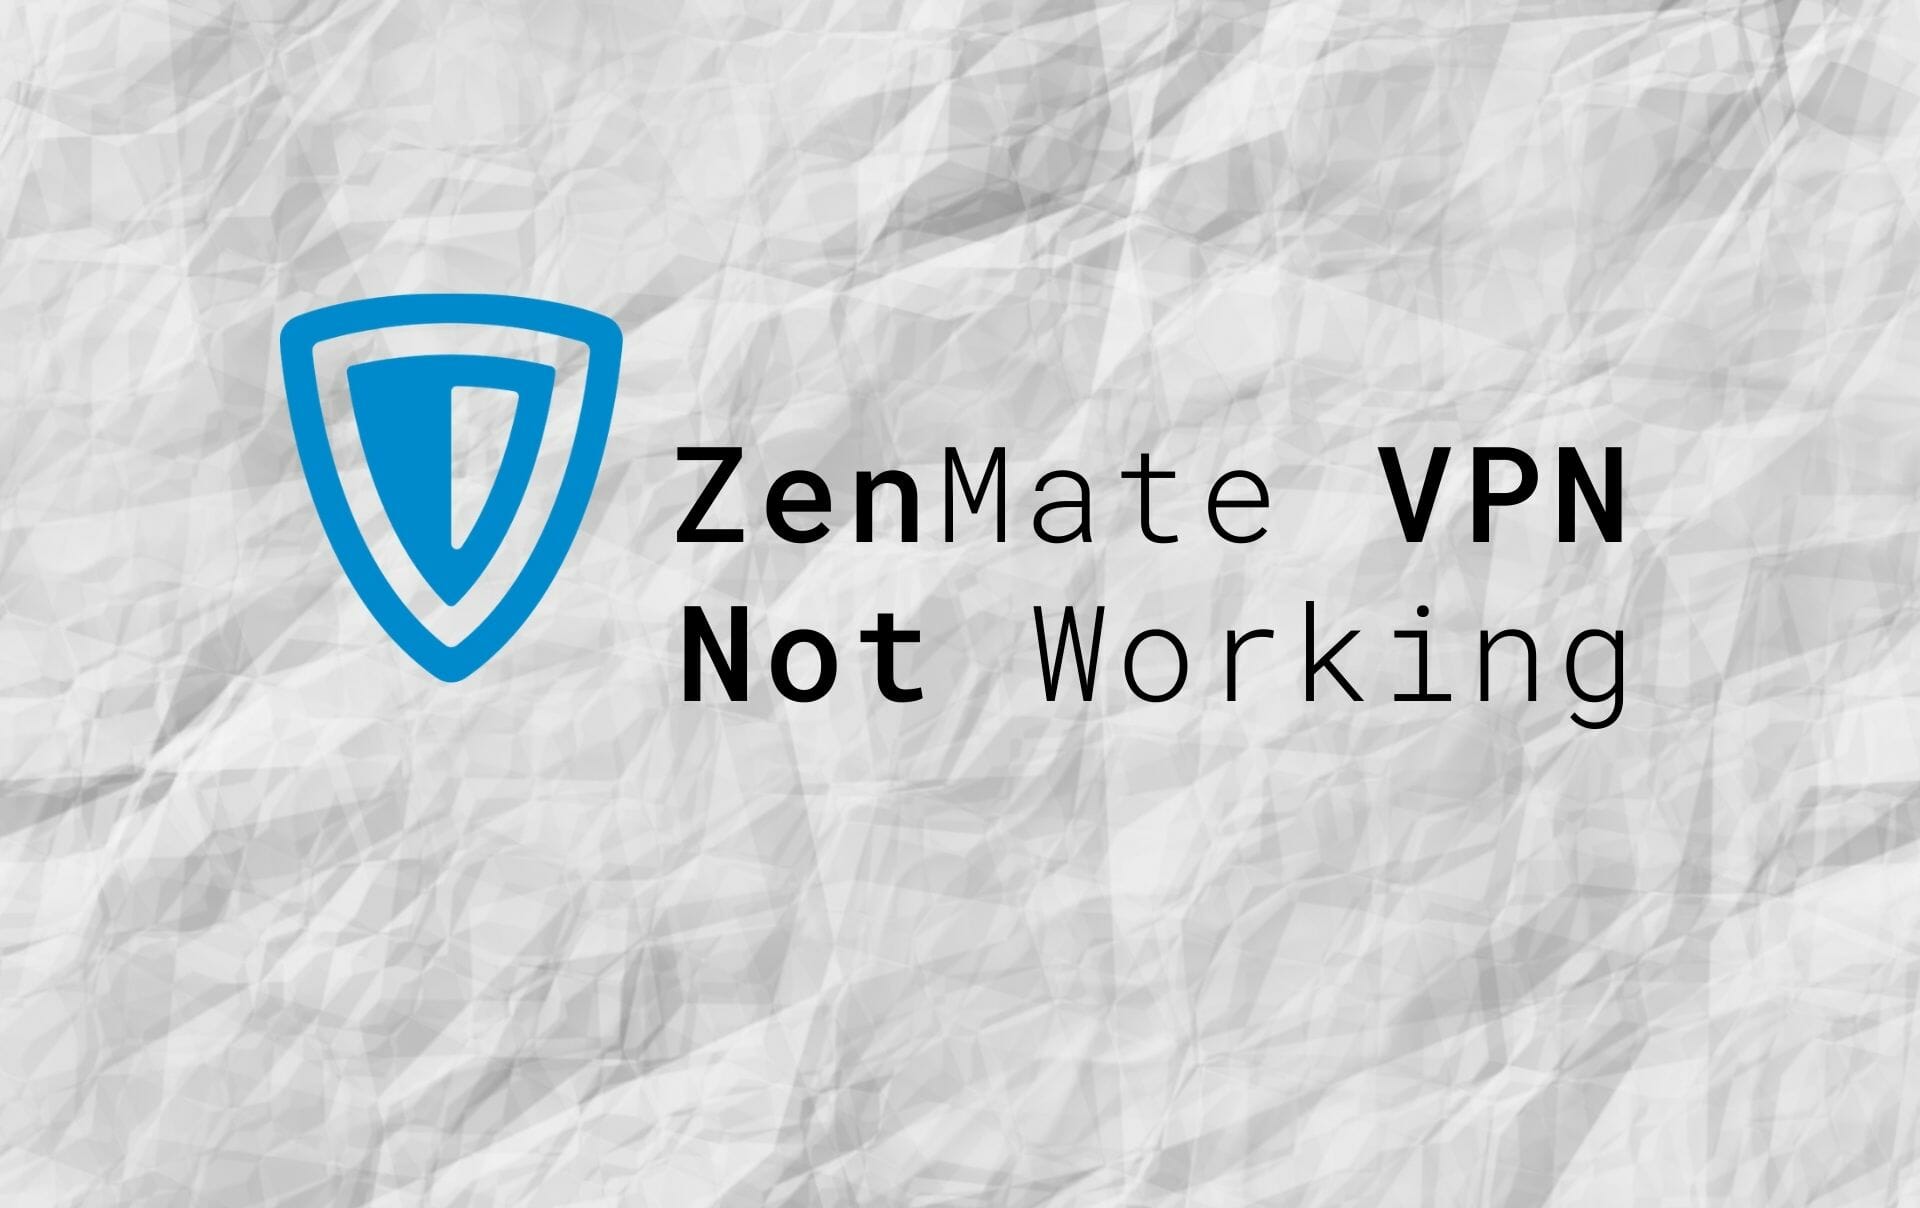 ZenMate VPN not working